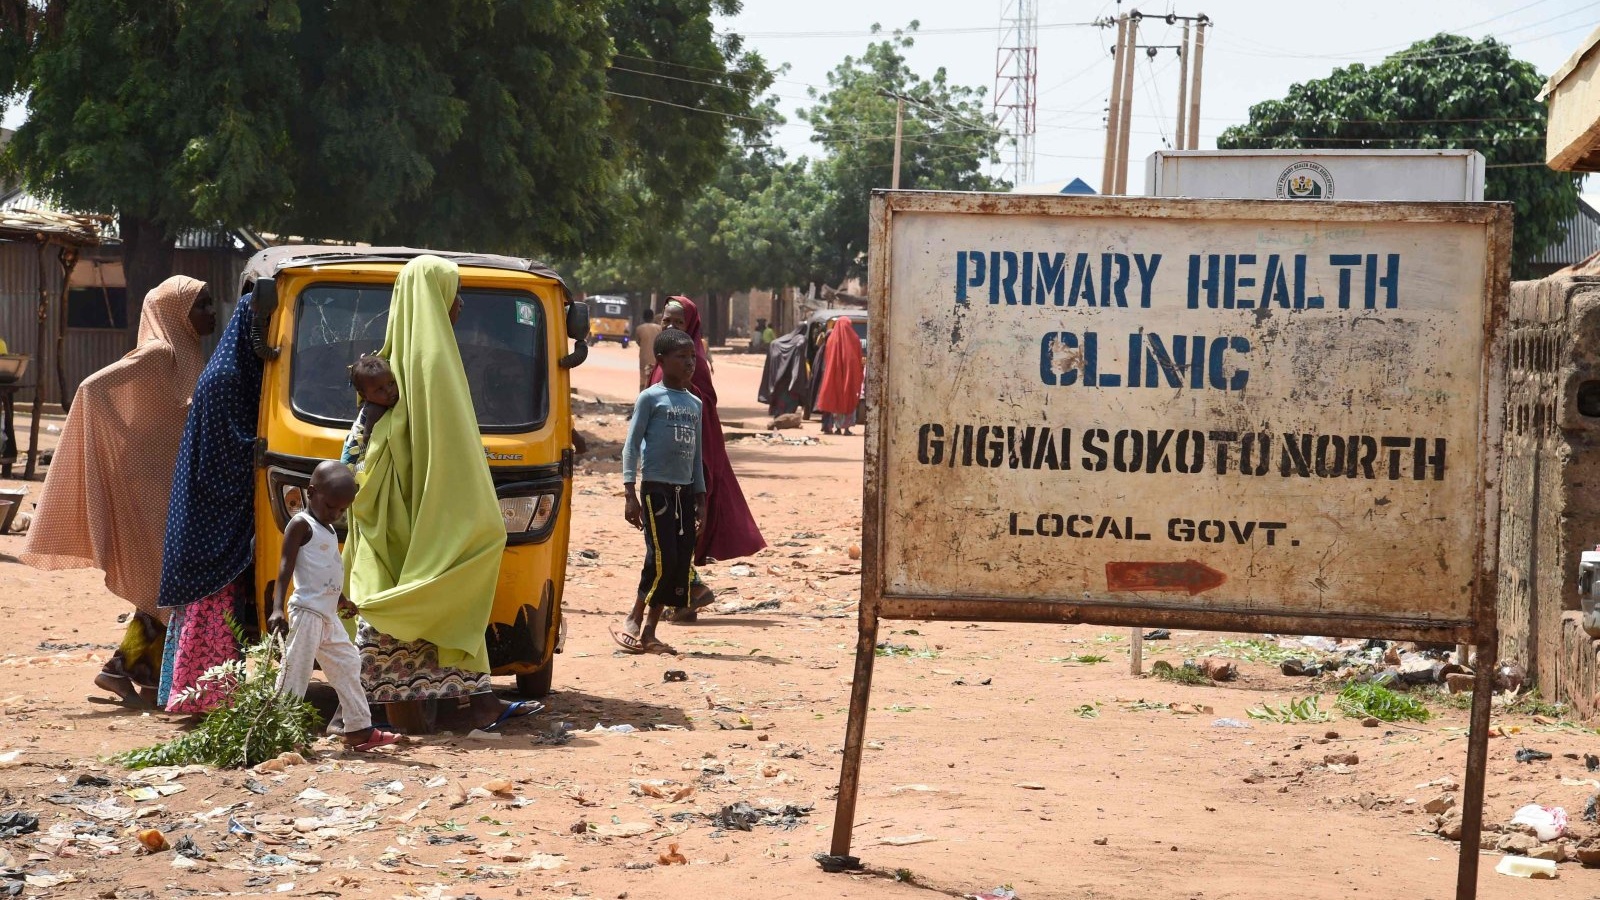 نيجيريات يصلن إلى عيادة الصحة الأولية، غلغواي سوكوتو نورث في شمال غرب نيجيريا. في 21 أيلول/سبتمبر 2021